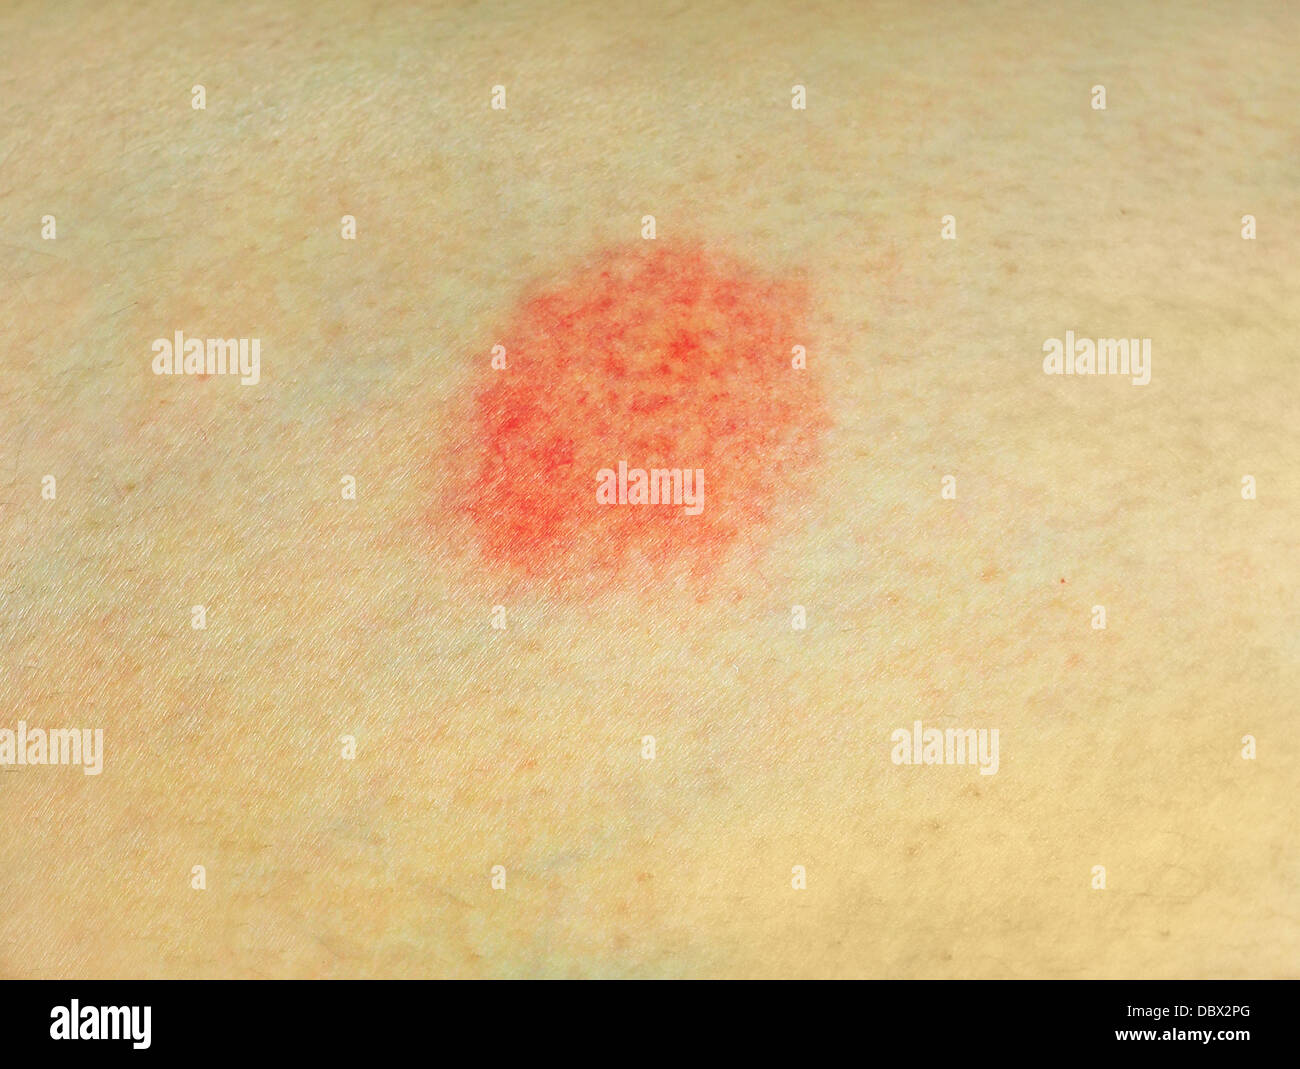 Macchia rossa sulla pelle Foto stock - Alamy